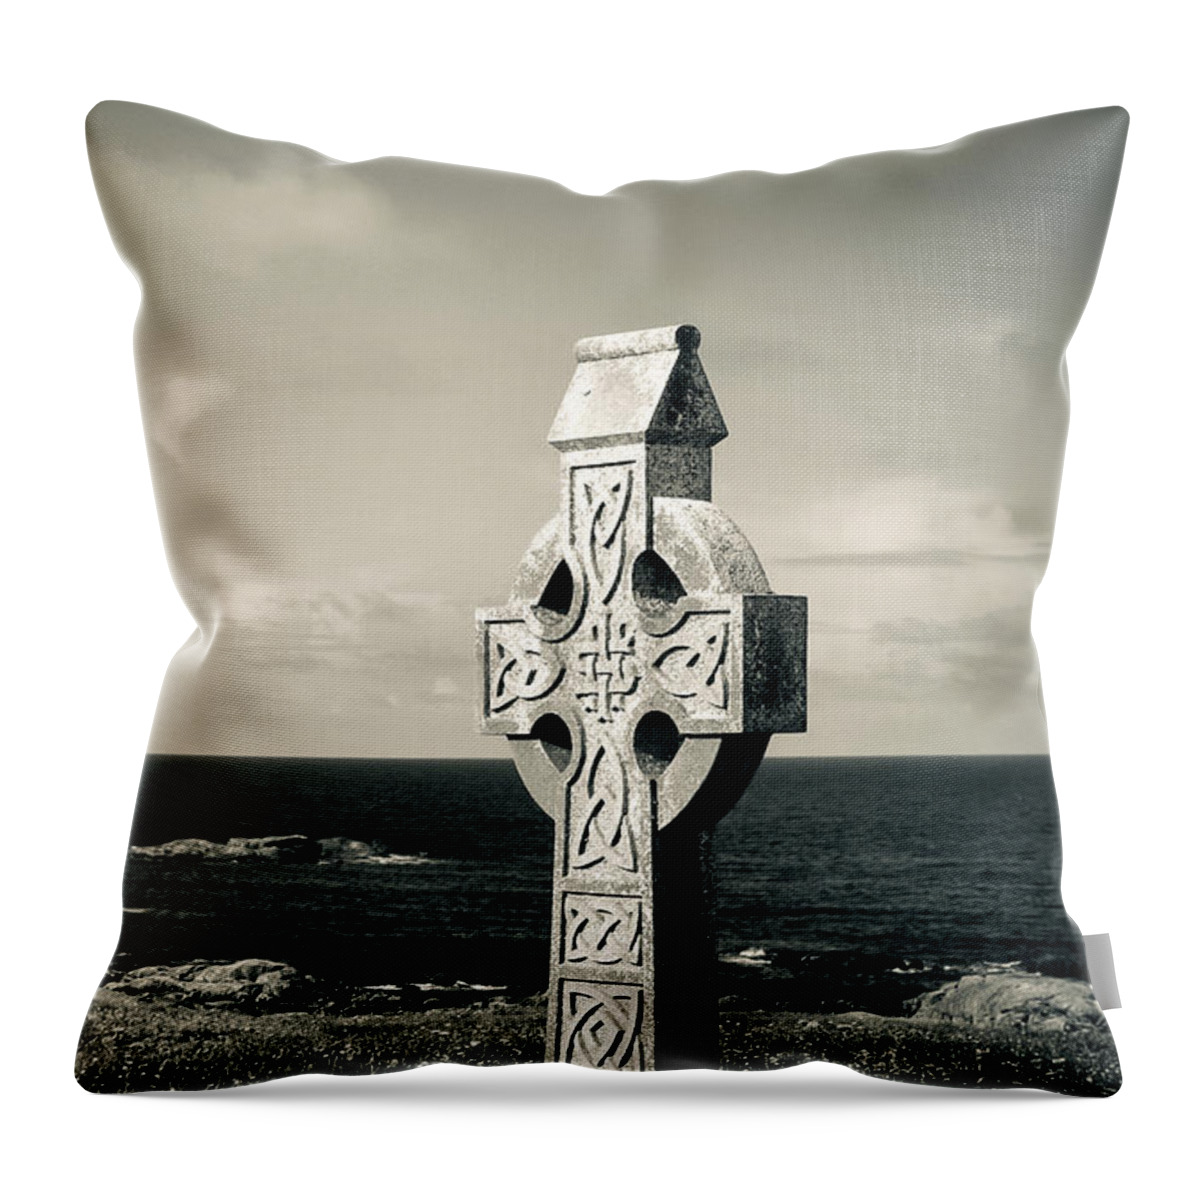 Connemara Throw Pillow featuring the photograph Connemara Celtic Cross by Mark Callanan